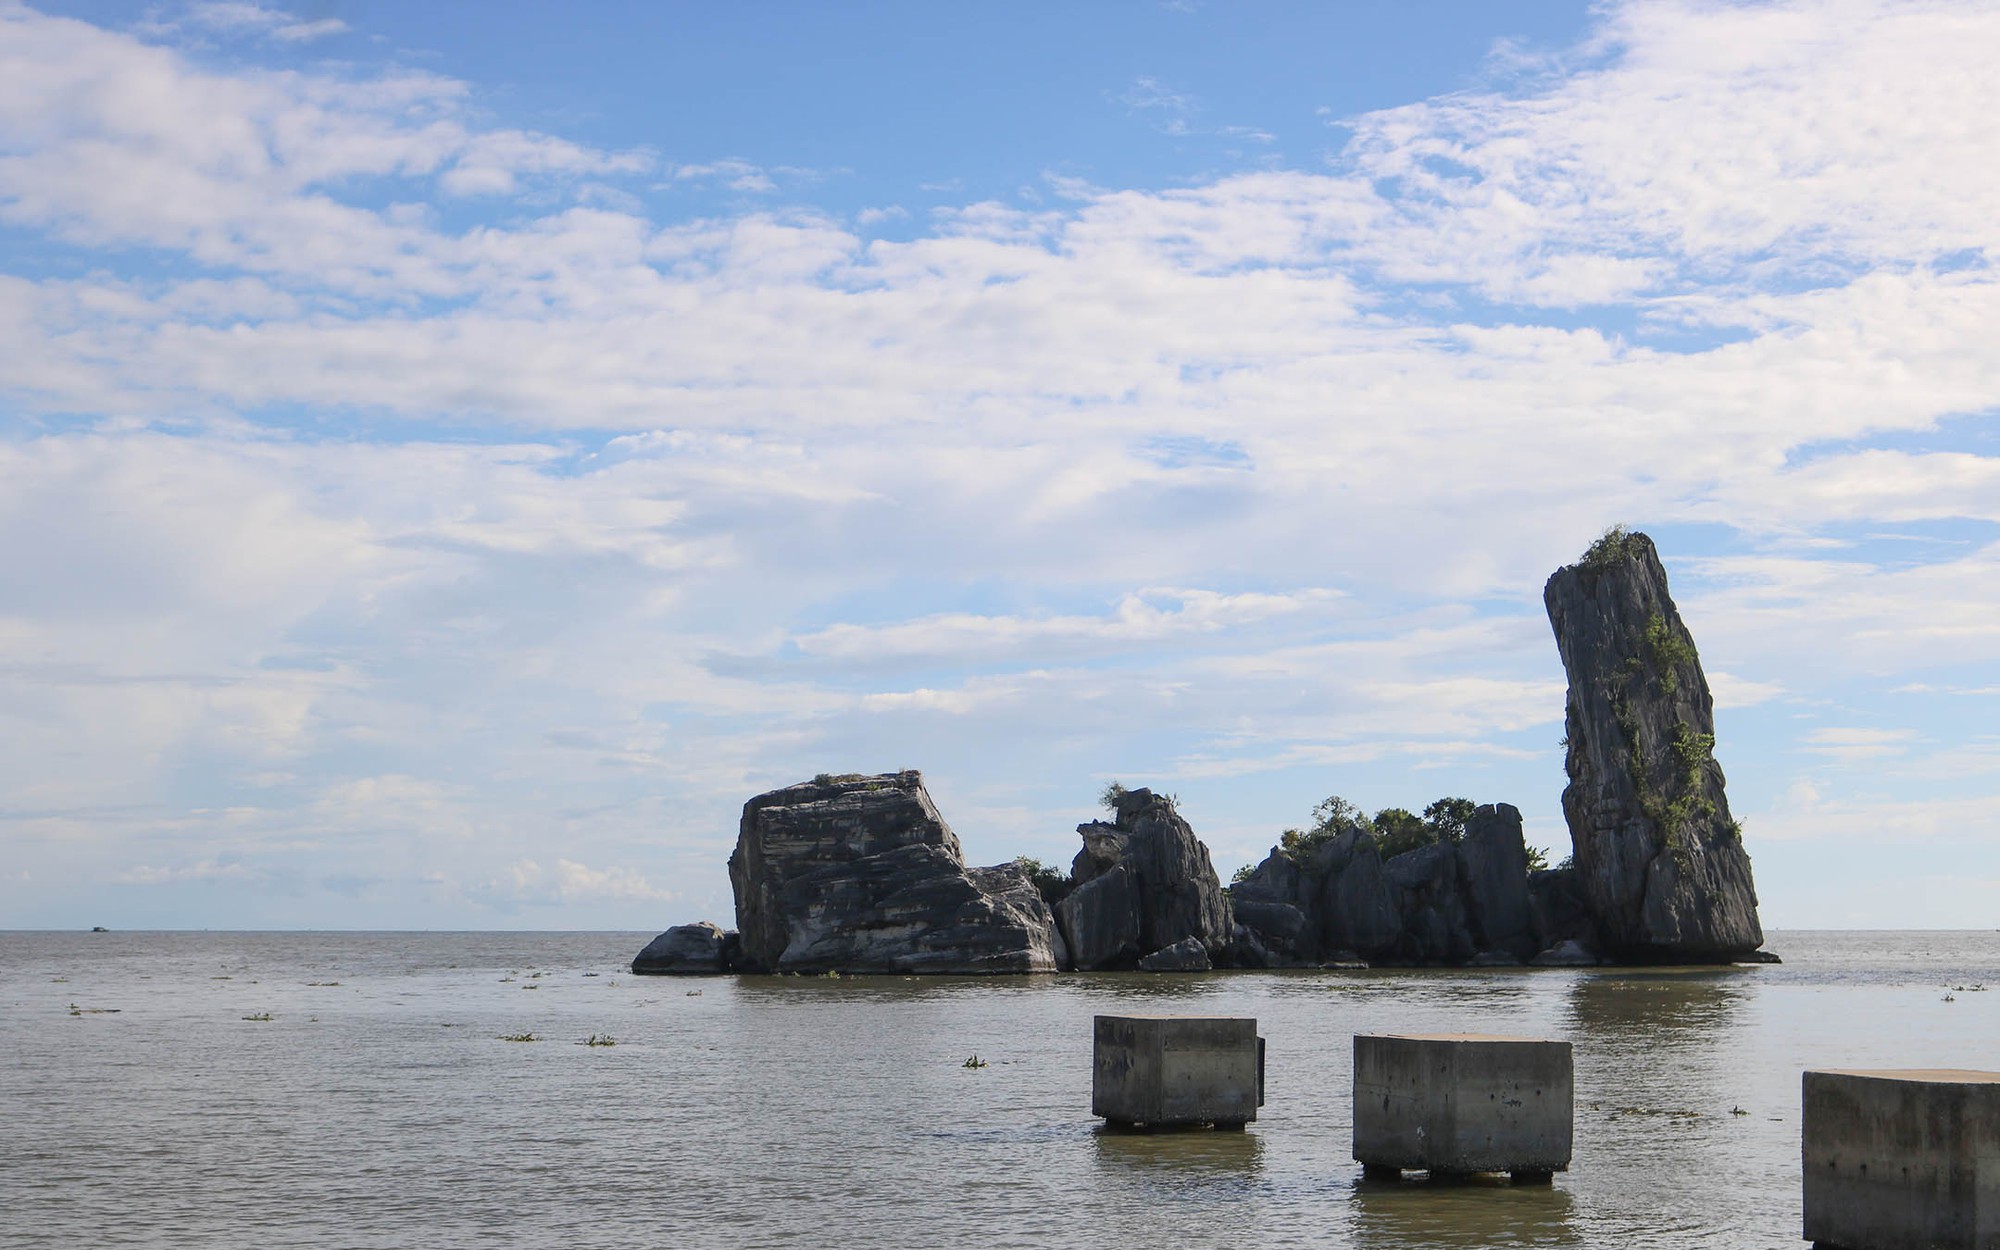 Một vùng biển có tảng đá gọi là Hòn Phụ Tử ở Kiên Giang, muốn đến đó thì phải qua chùa Hang